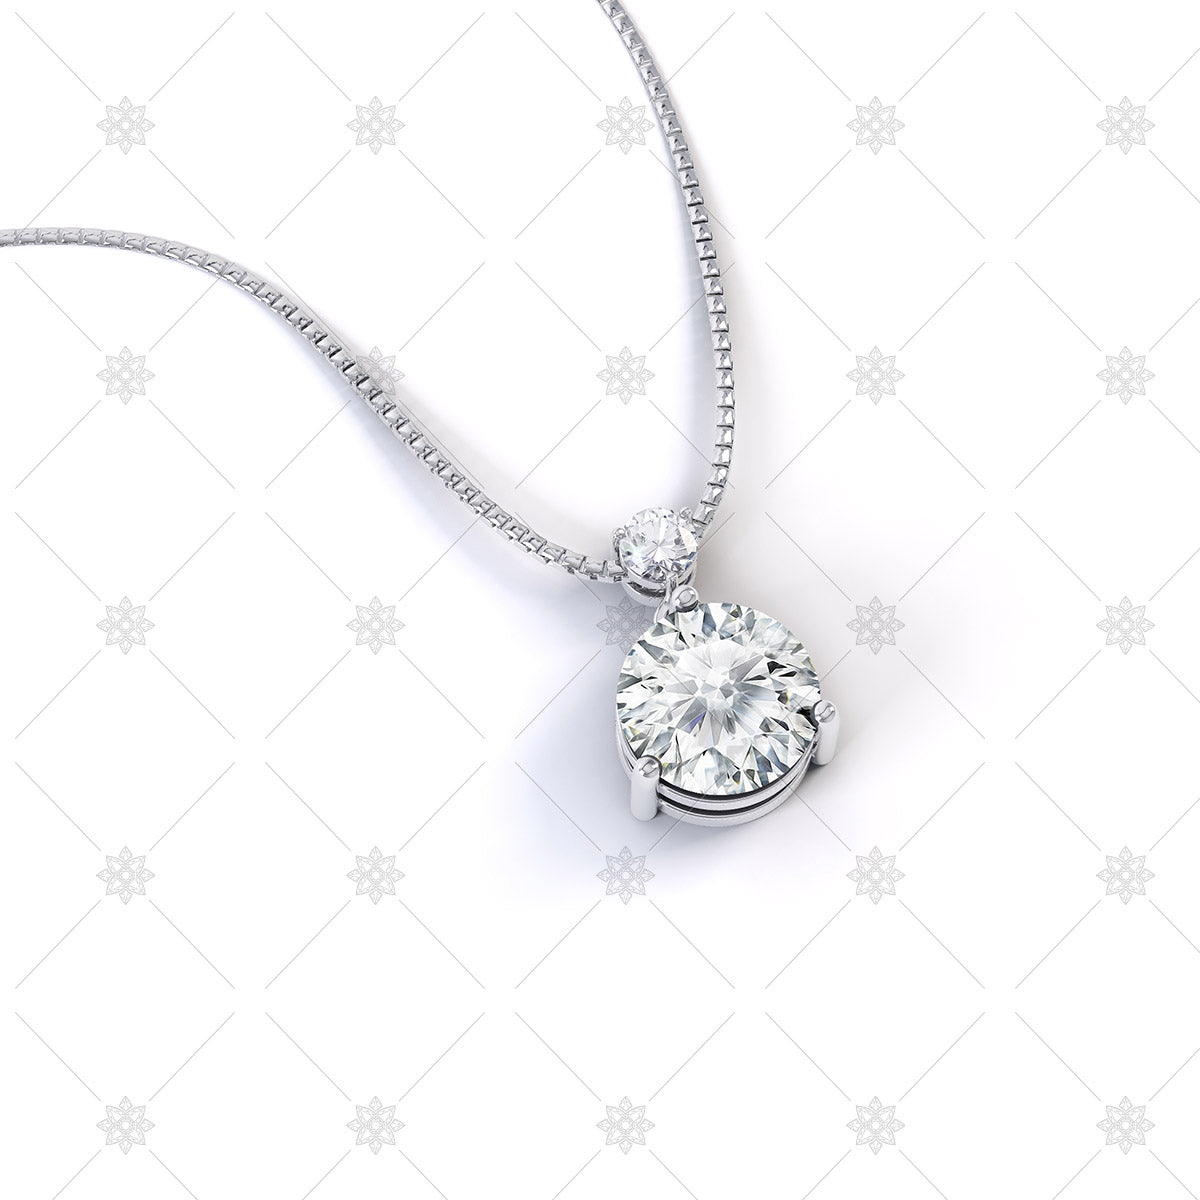 White gold diamond pendant